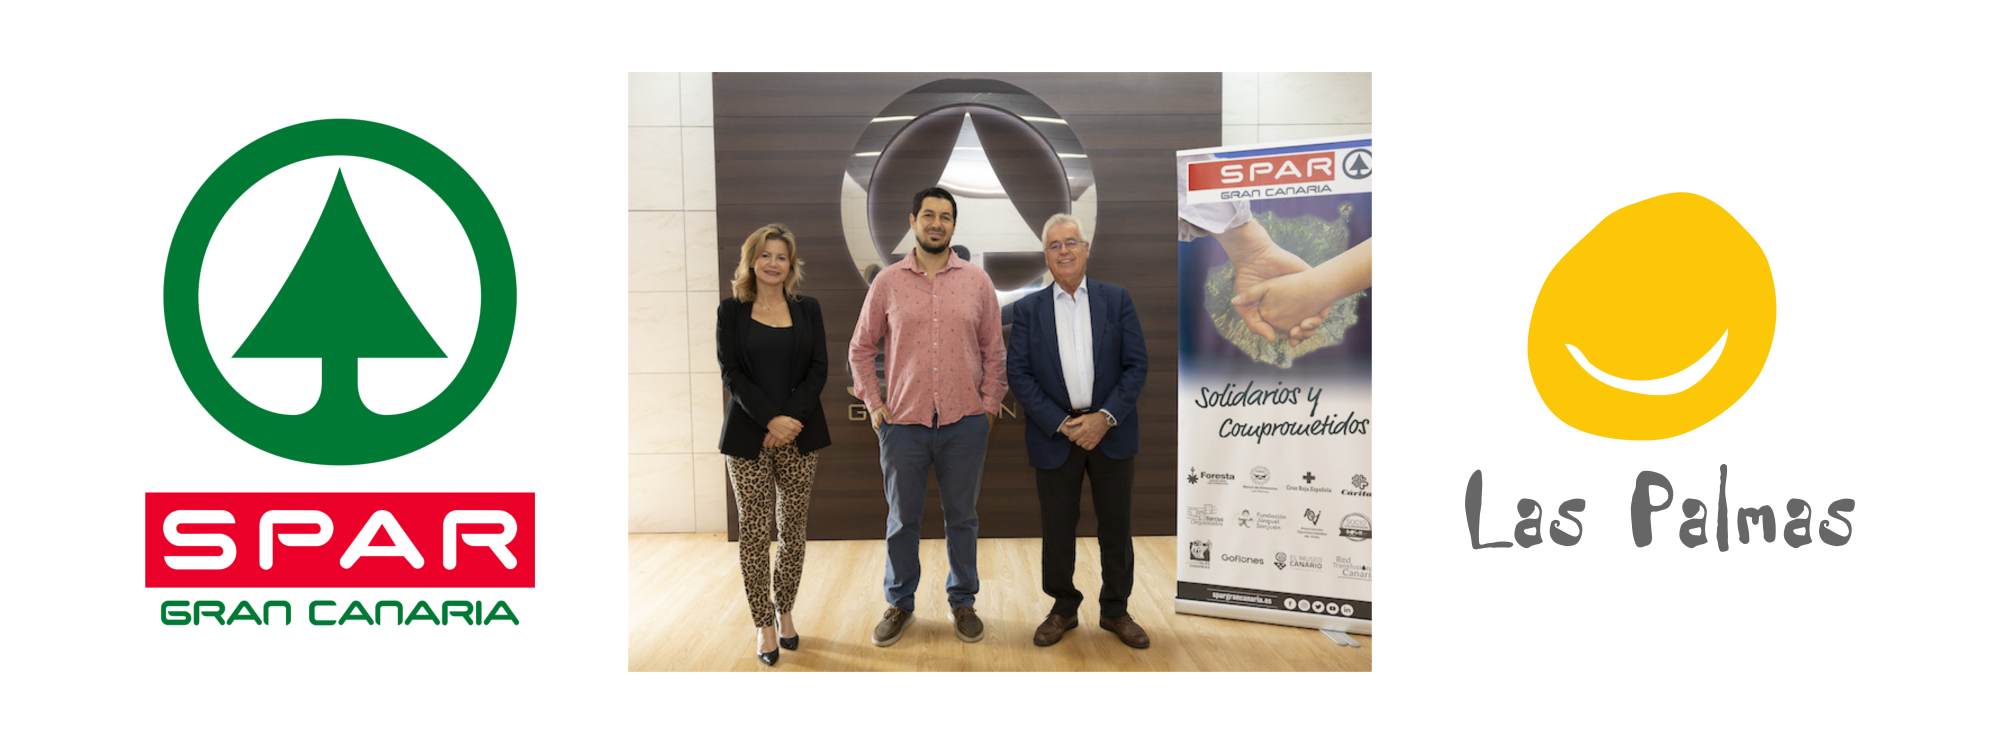 Representantes de SPAR Gran Canaria y Down Las Palmas tras la firma del convenio